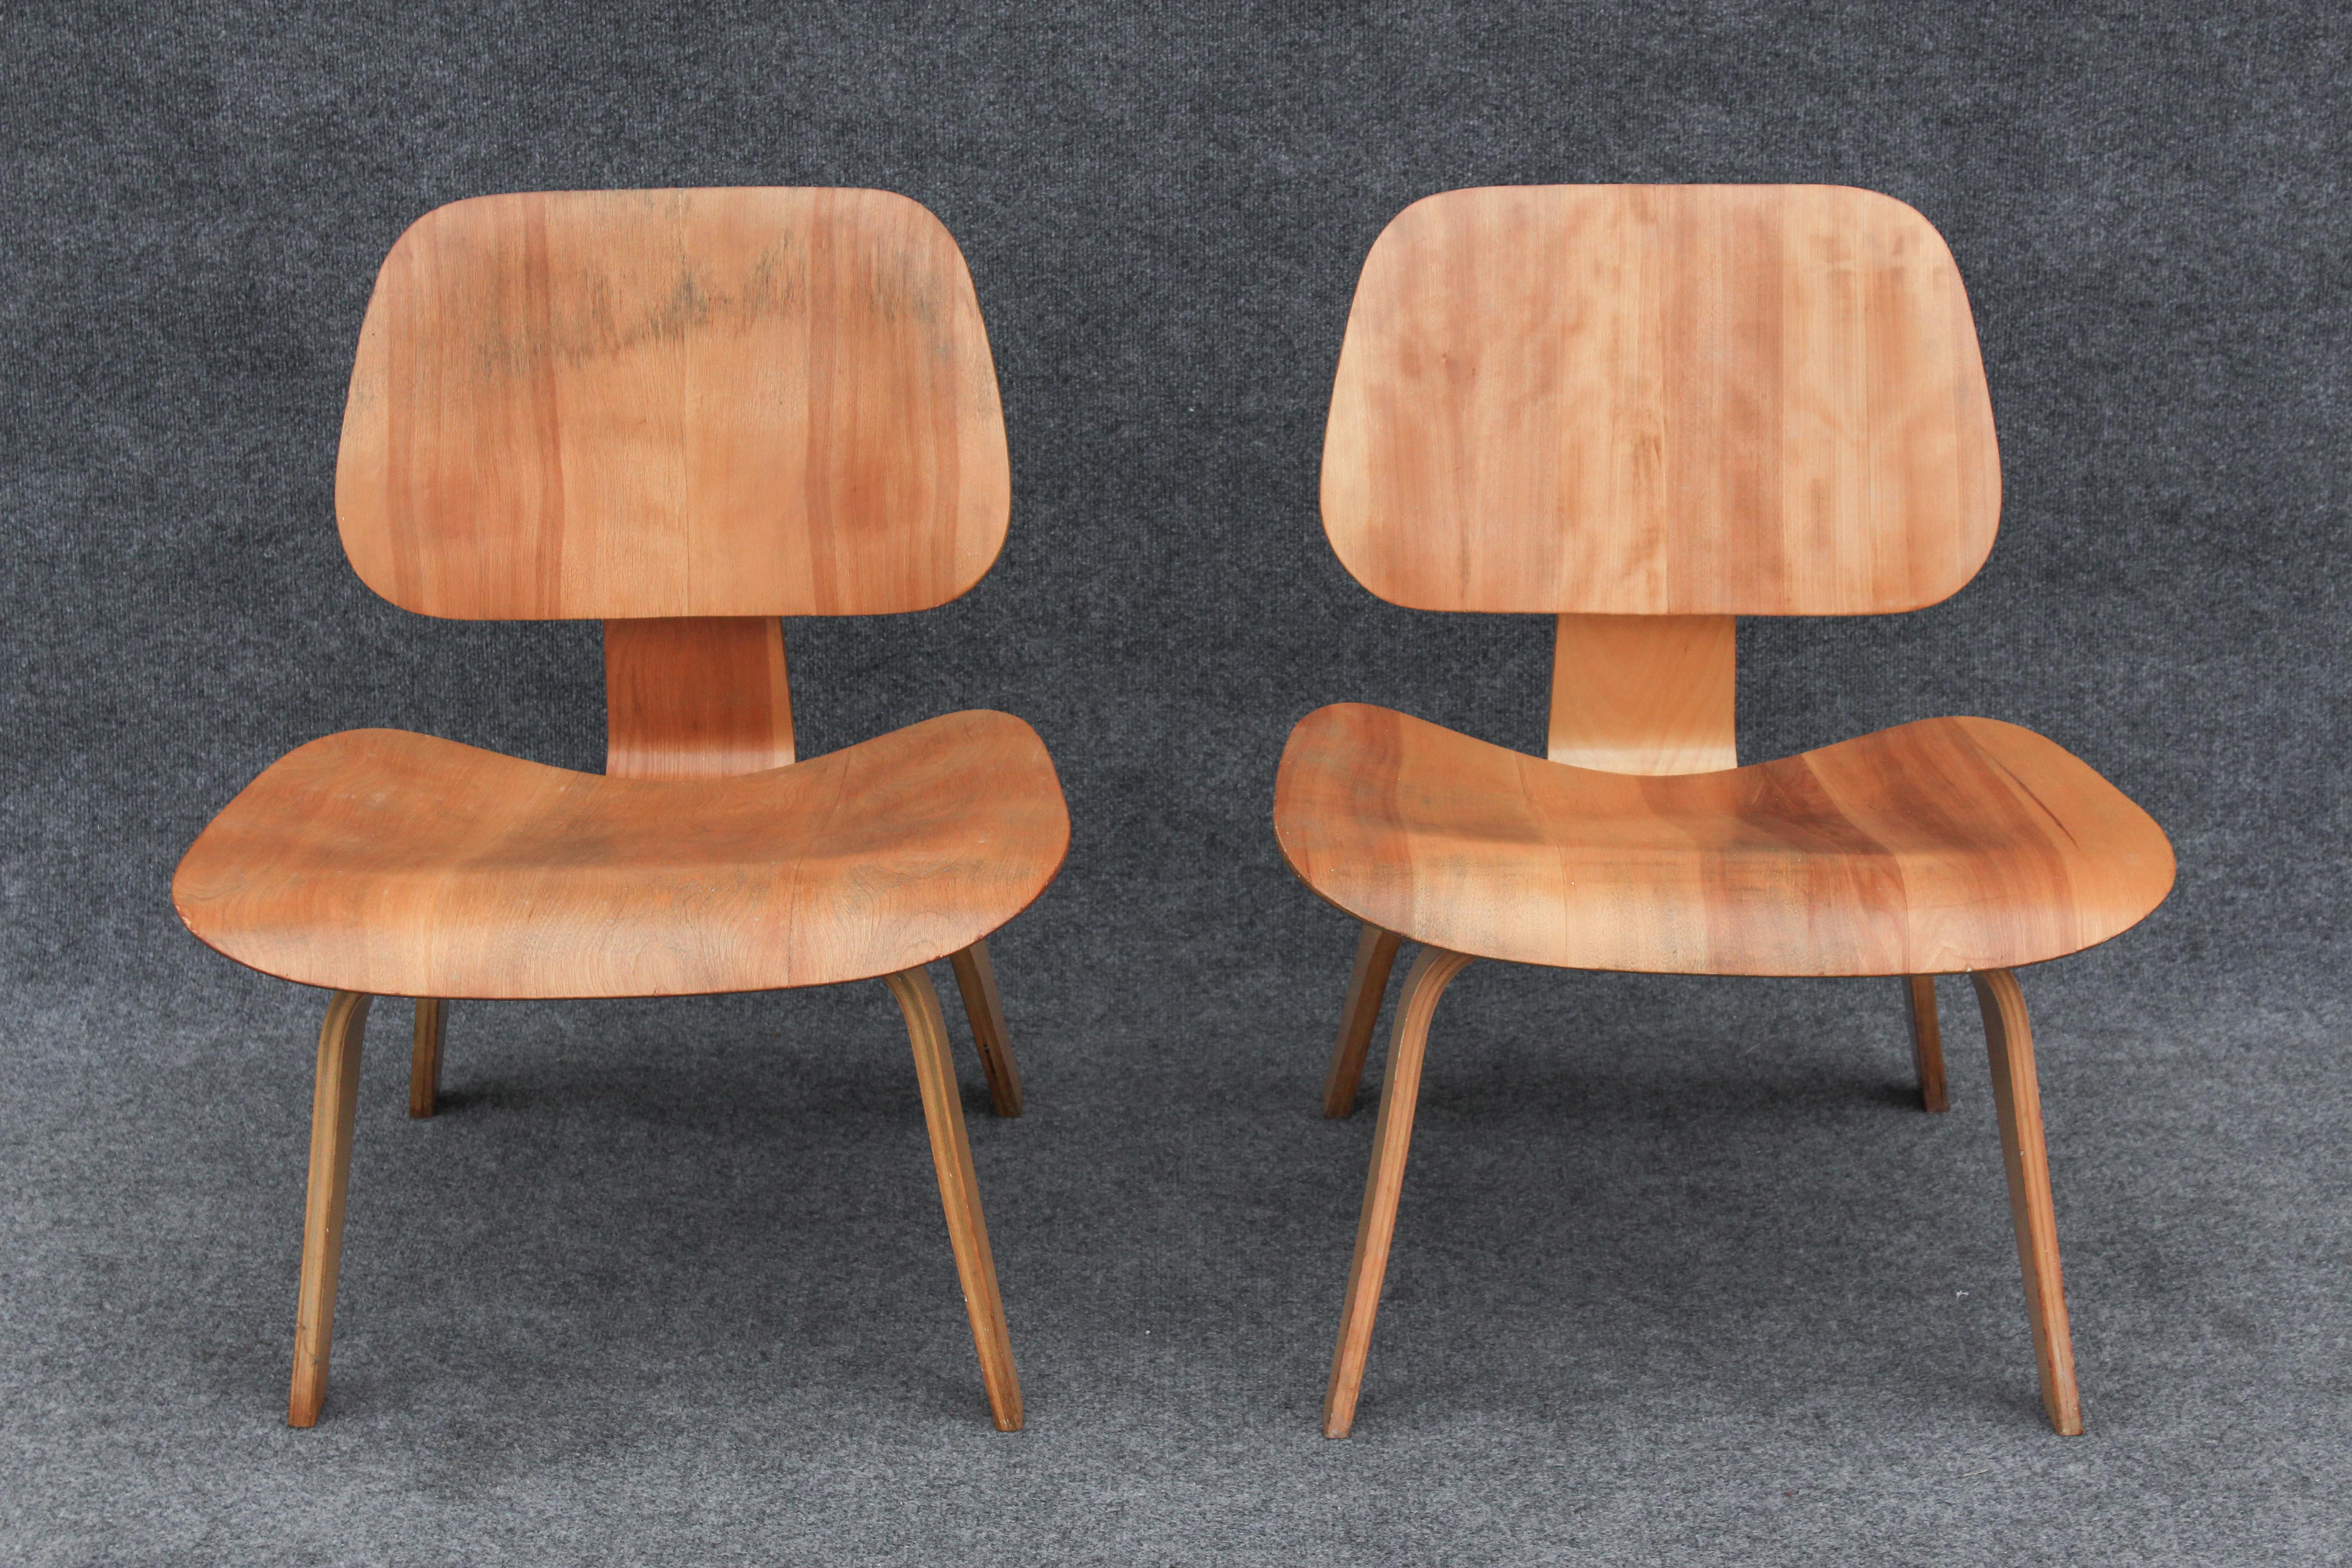 Dieser in den späten 1940er Jahren von Charles Eames entworfene Stuhl hat sich wie kaum ein anderes Stück im Mid-Century-Design etabliert. Frühe Modelle wie dieses sind schwer zu bekommen und befinden sich nur selten in einem so guten Zustand, da